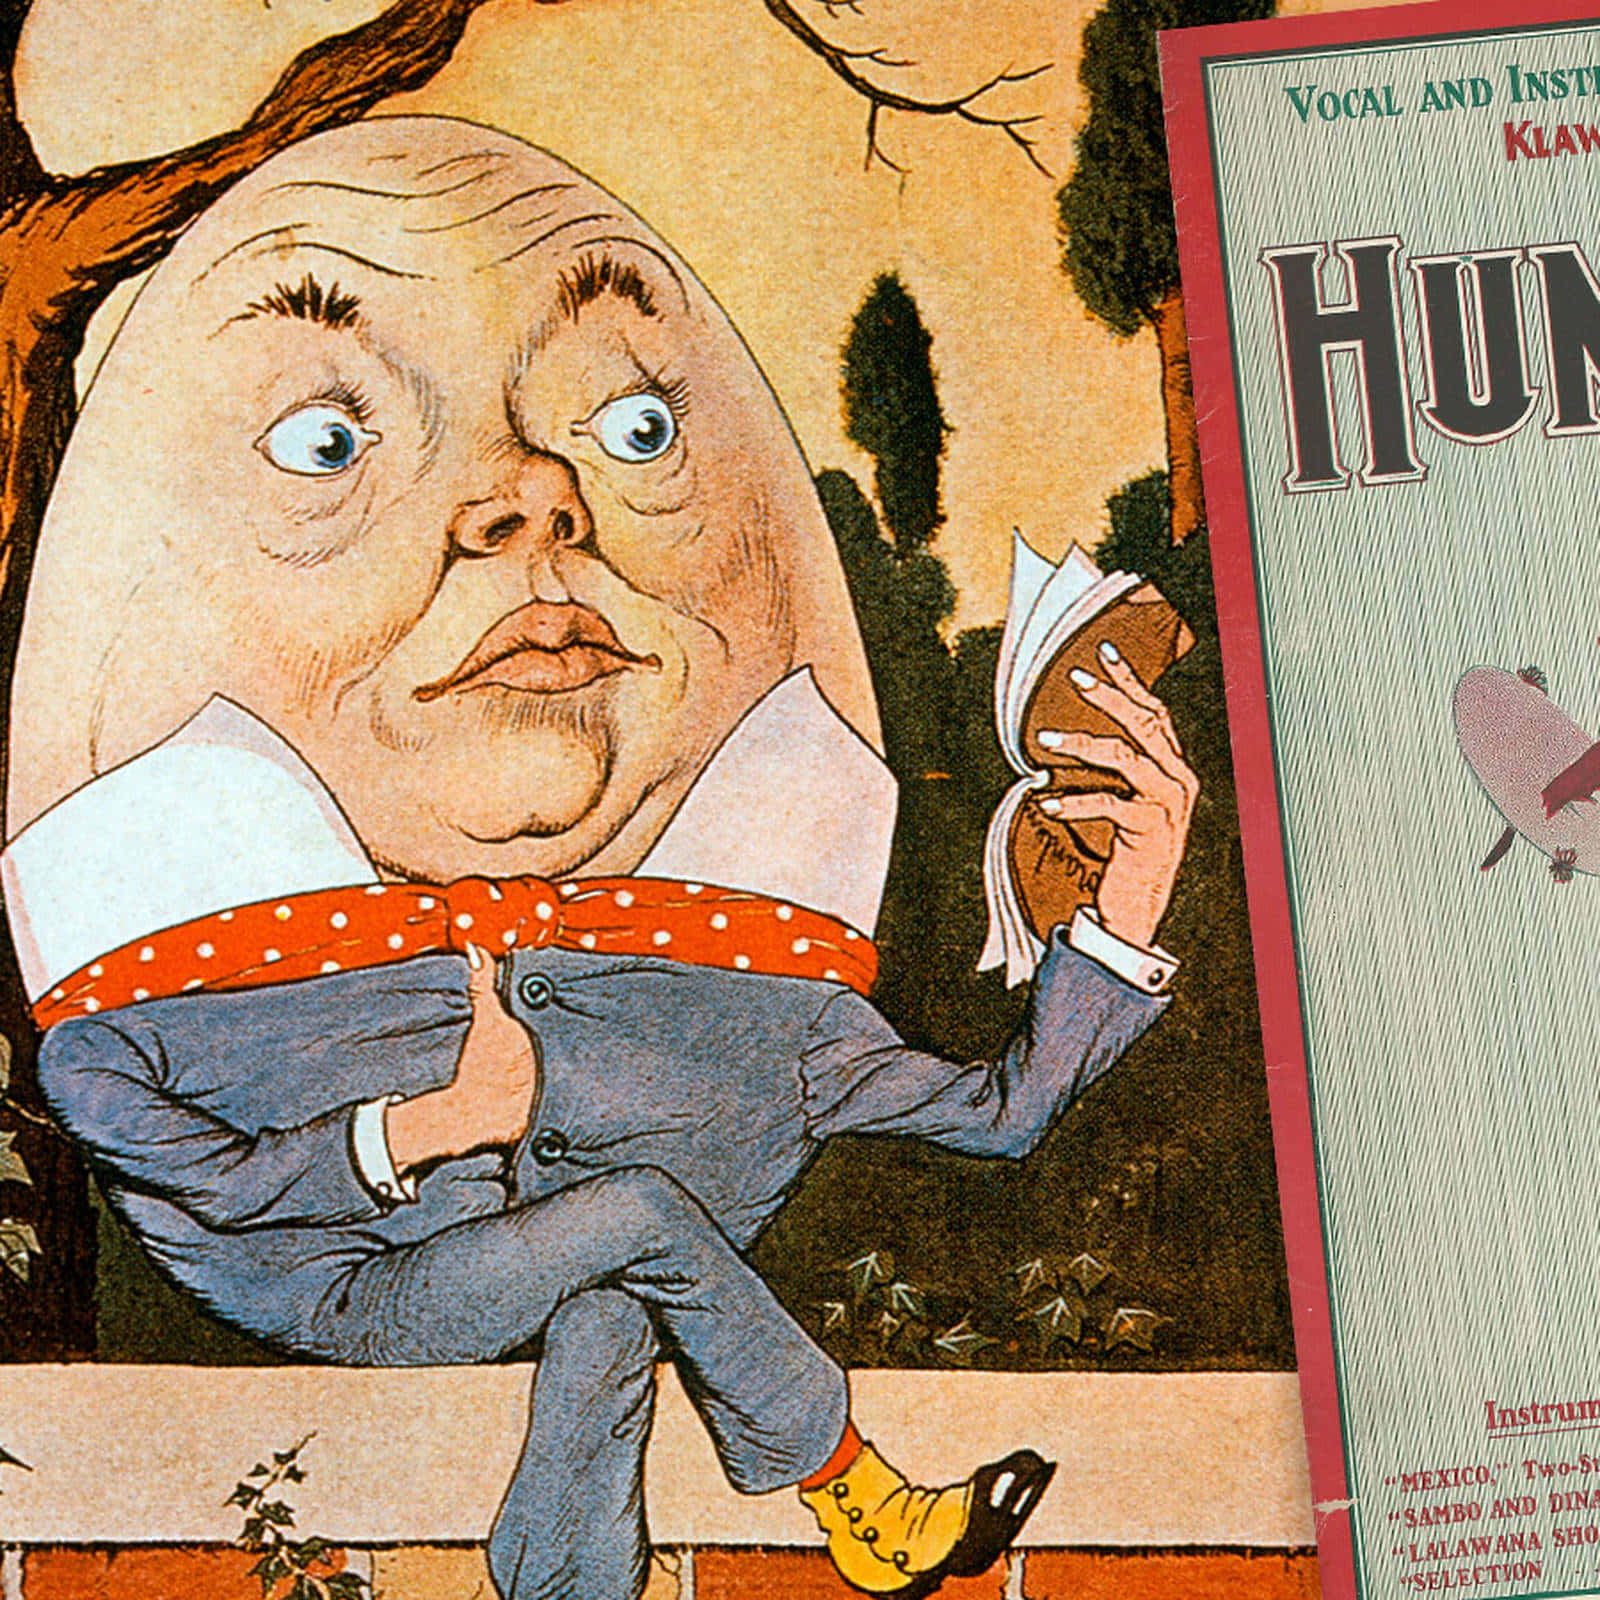 Imagende Portada De Libro Vintage De Humpty Dumpty